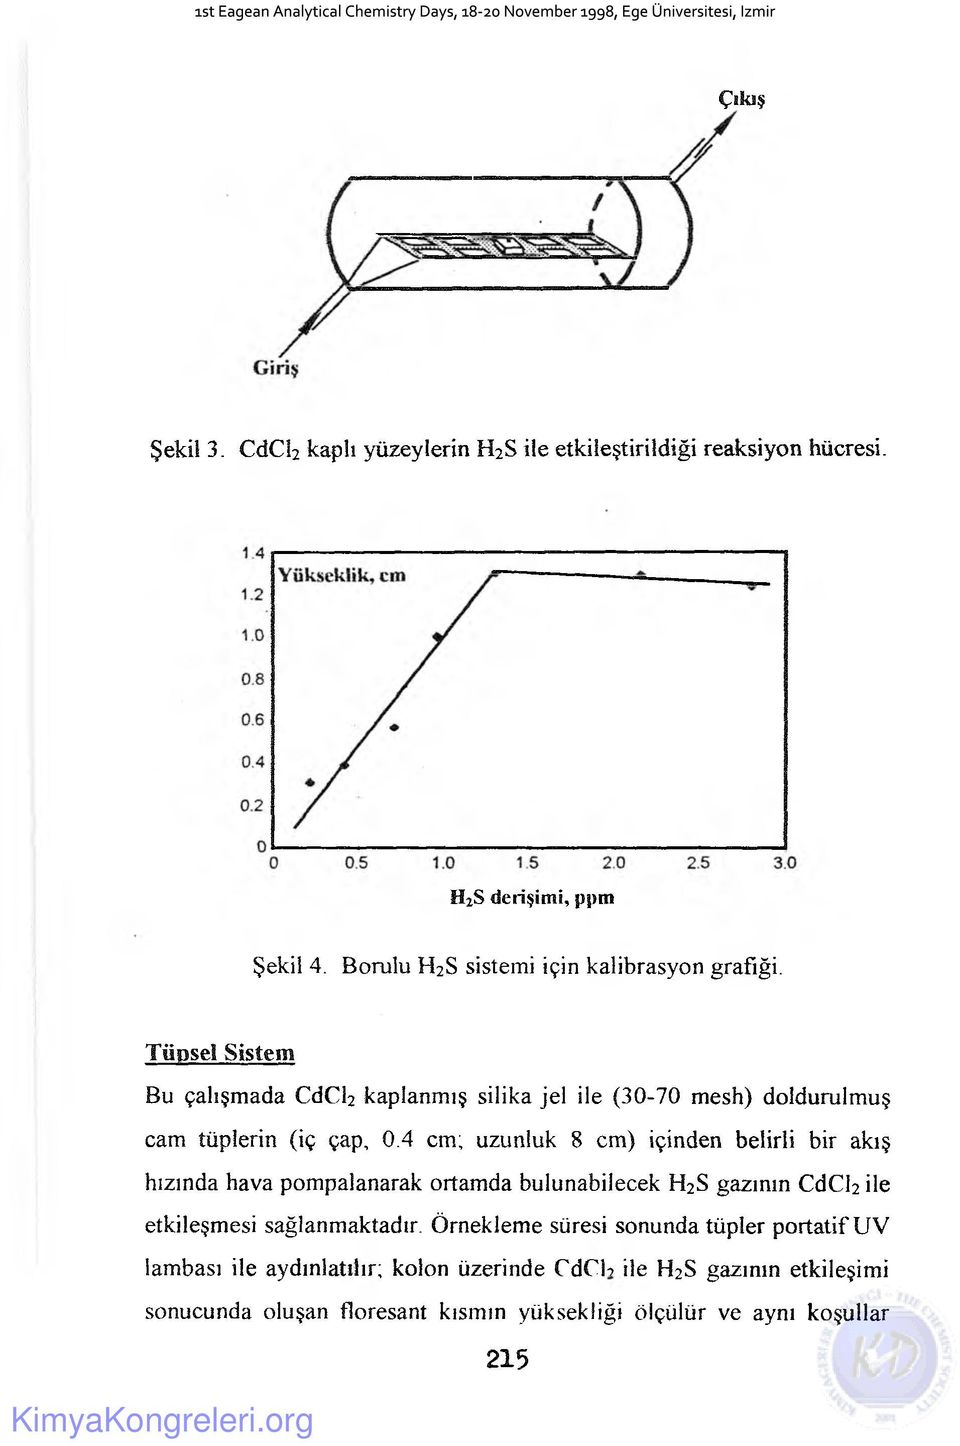 Tfipsel Sistem Bu çalışmada CdCh kaplanmış silika jel ile (30-70 mesh) doldurulmuş cam tüplerin (iç çap, 0.